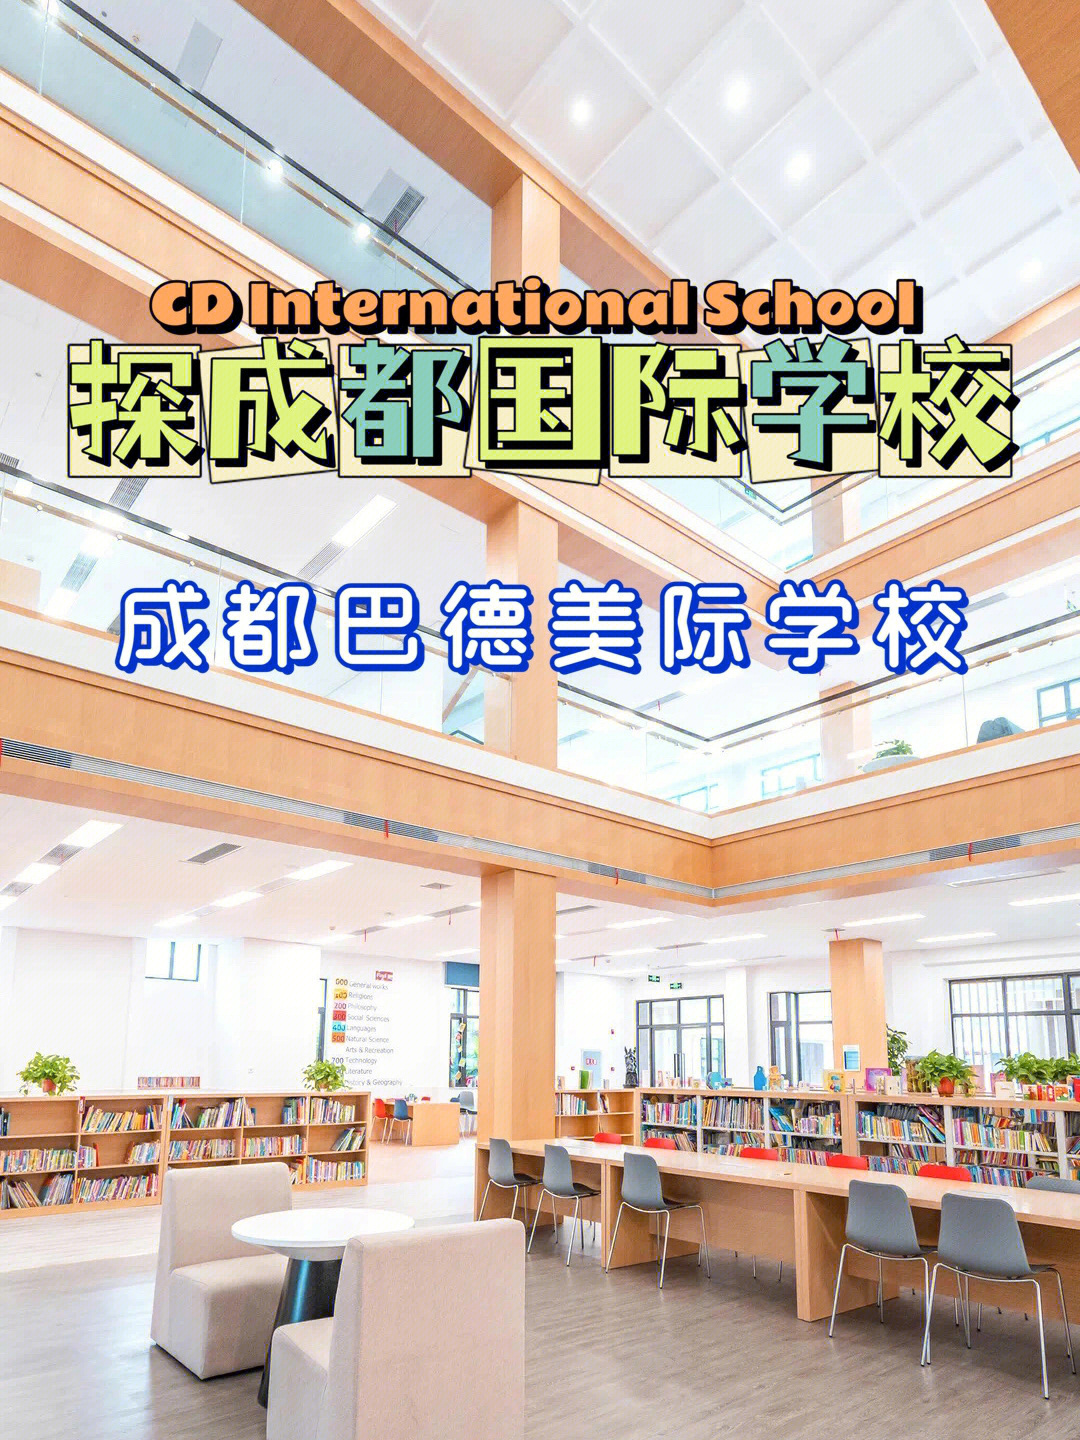 成都美中国际学校图片